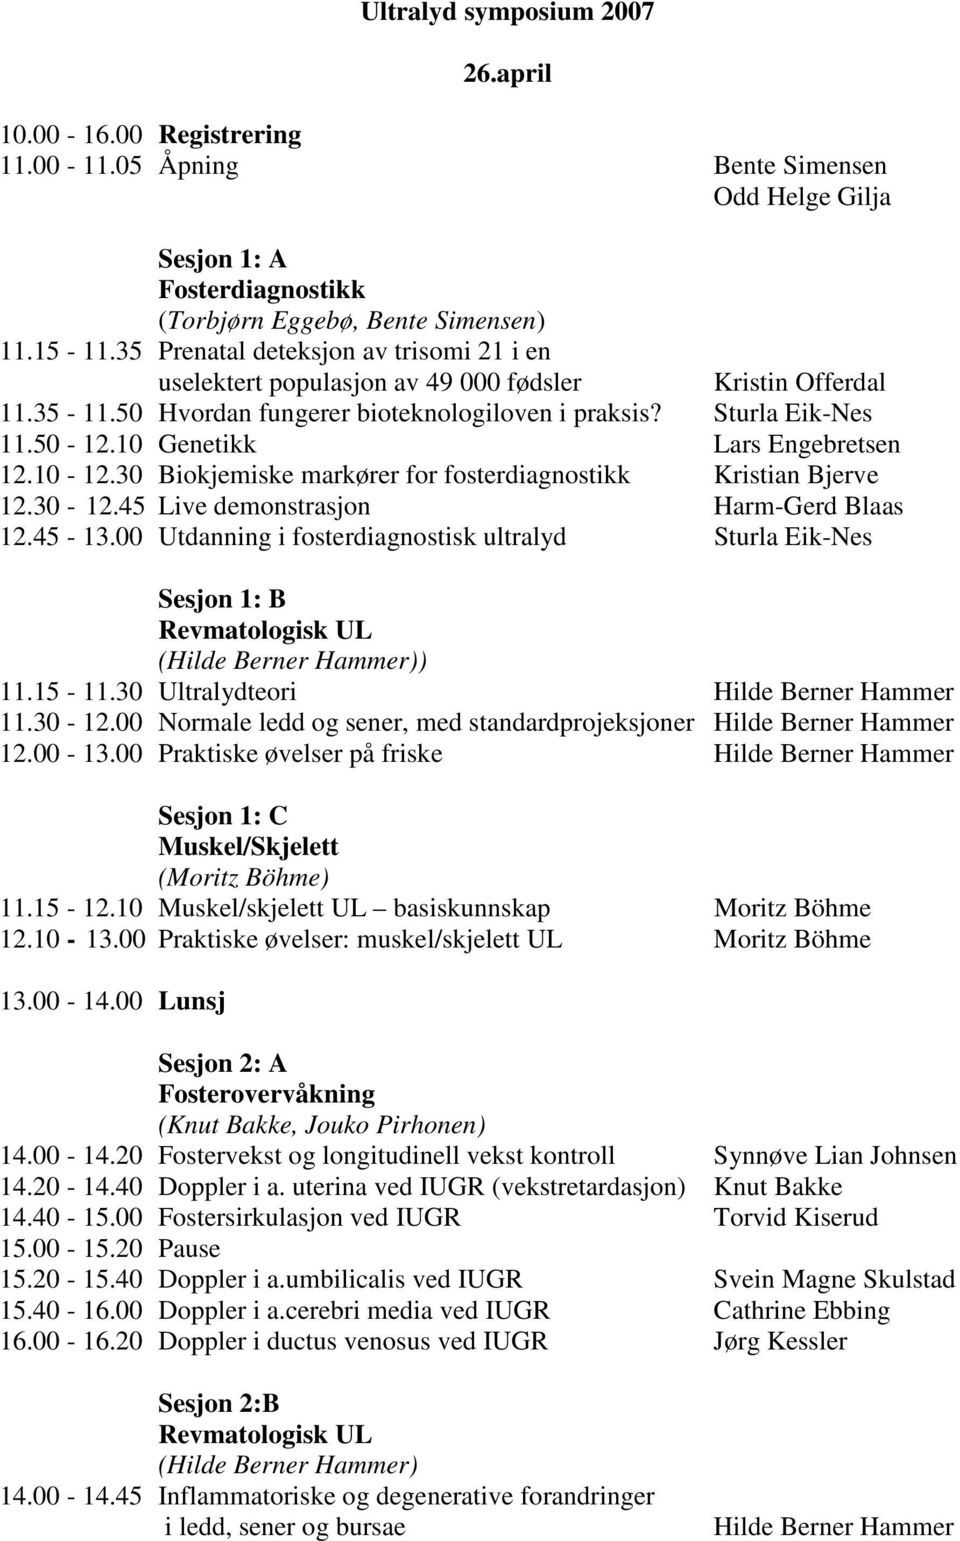 10 Genetikk Lars Engebretsen 12.10-12.30 Biokjemiske markører for fosterdiagnostikk Kristian Bjerve 12.30-12.45 Live demonstrasjon Harm-Gerd Blaas 12.45-13.